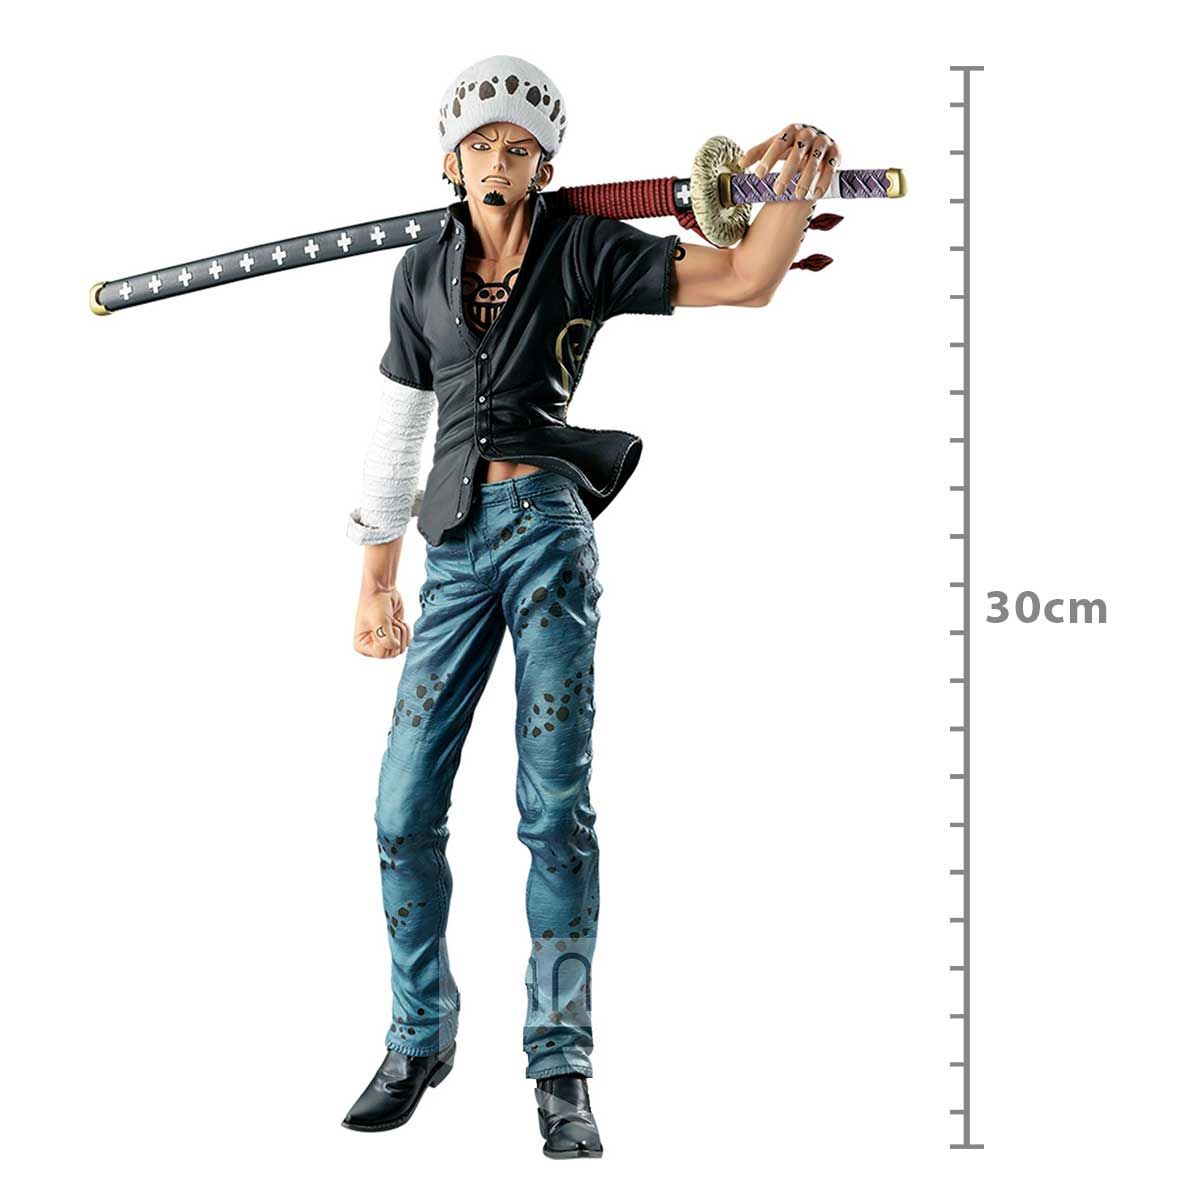 One Piece - Trafalgar Law - BIG Size Figure - Bandai Banpresto